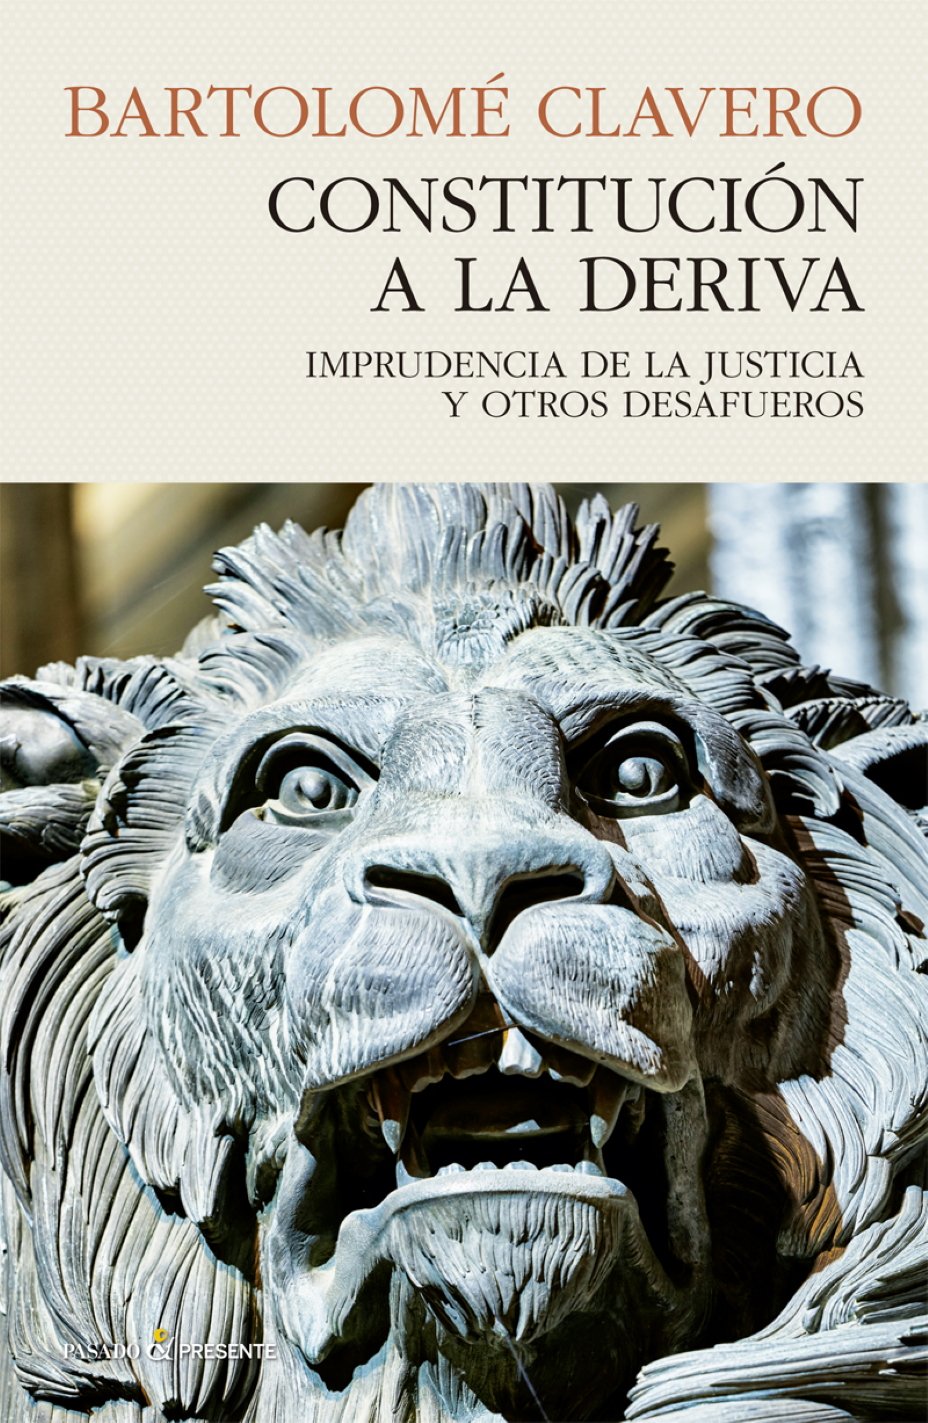 Bartolomé Clavero, 'Constitución a la deriva'. Pasado & Presente, 400 pp., 24 €.